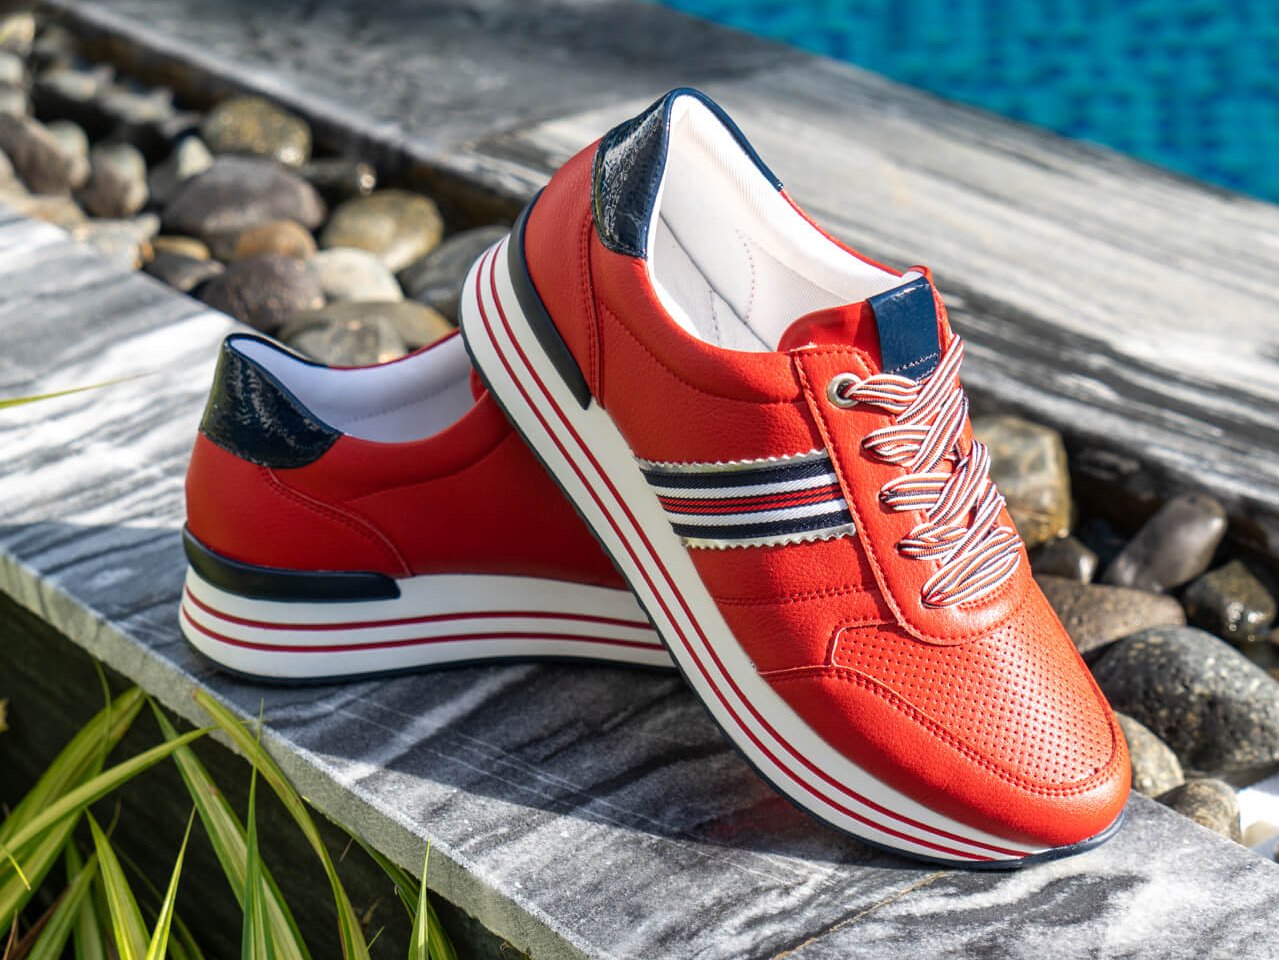 Rote Damen Sneaker von Remonte im maritimen Design und blau-weiß-roten Schnürsenkeln.